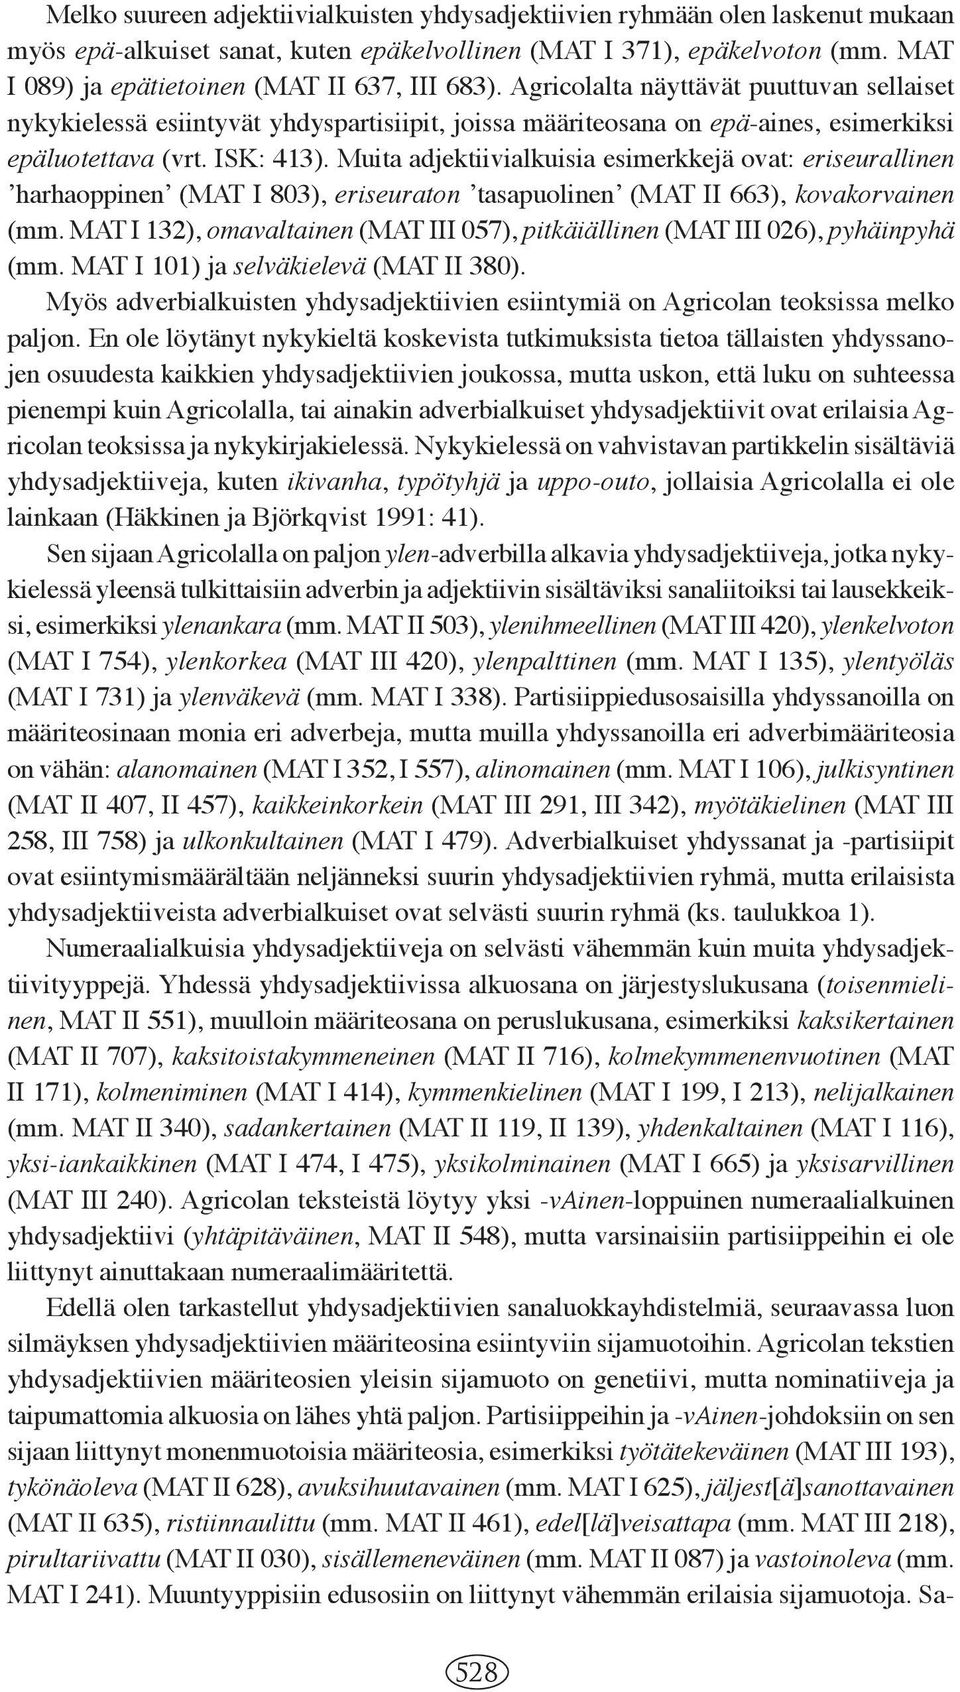 ISK: 413). Muita adjektiivialkuisia esimerkkejä ovat: eriseurallinen ʼharhaoppinenʼ (MAT I 803), eriseuraton ʼtasapuolinenʼ (MAT II 663), kovakorvainen (mm.